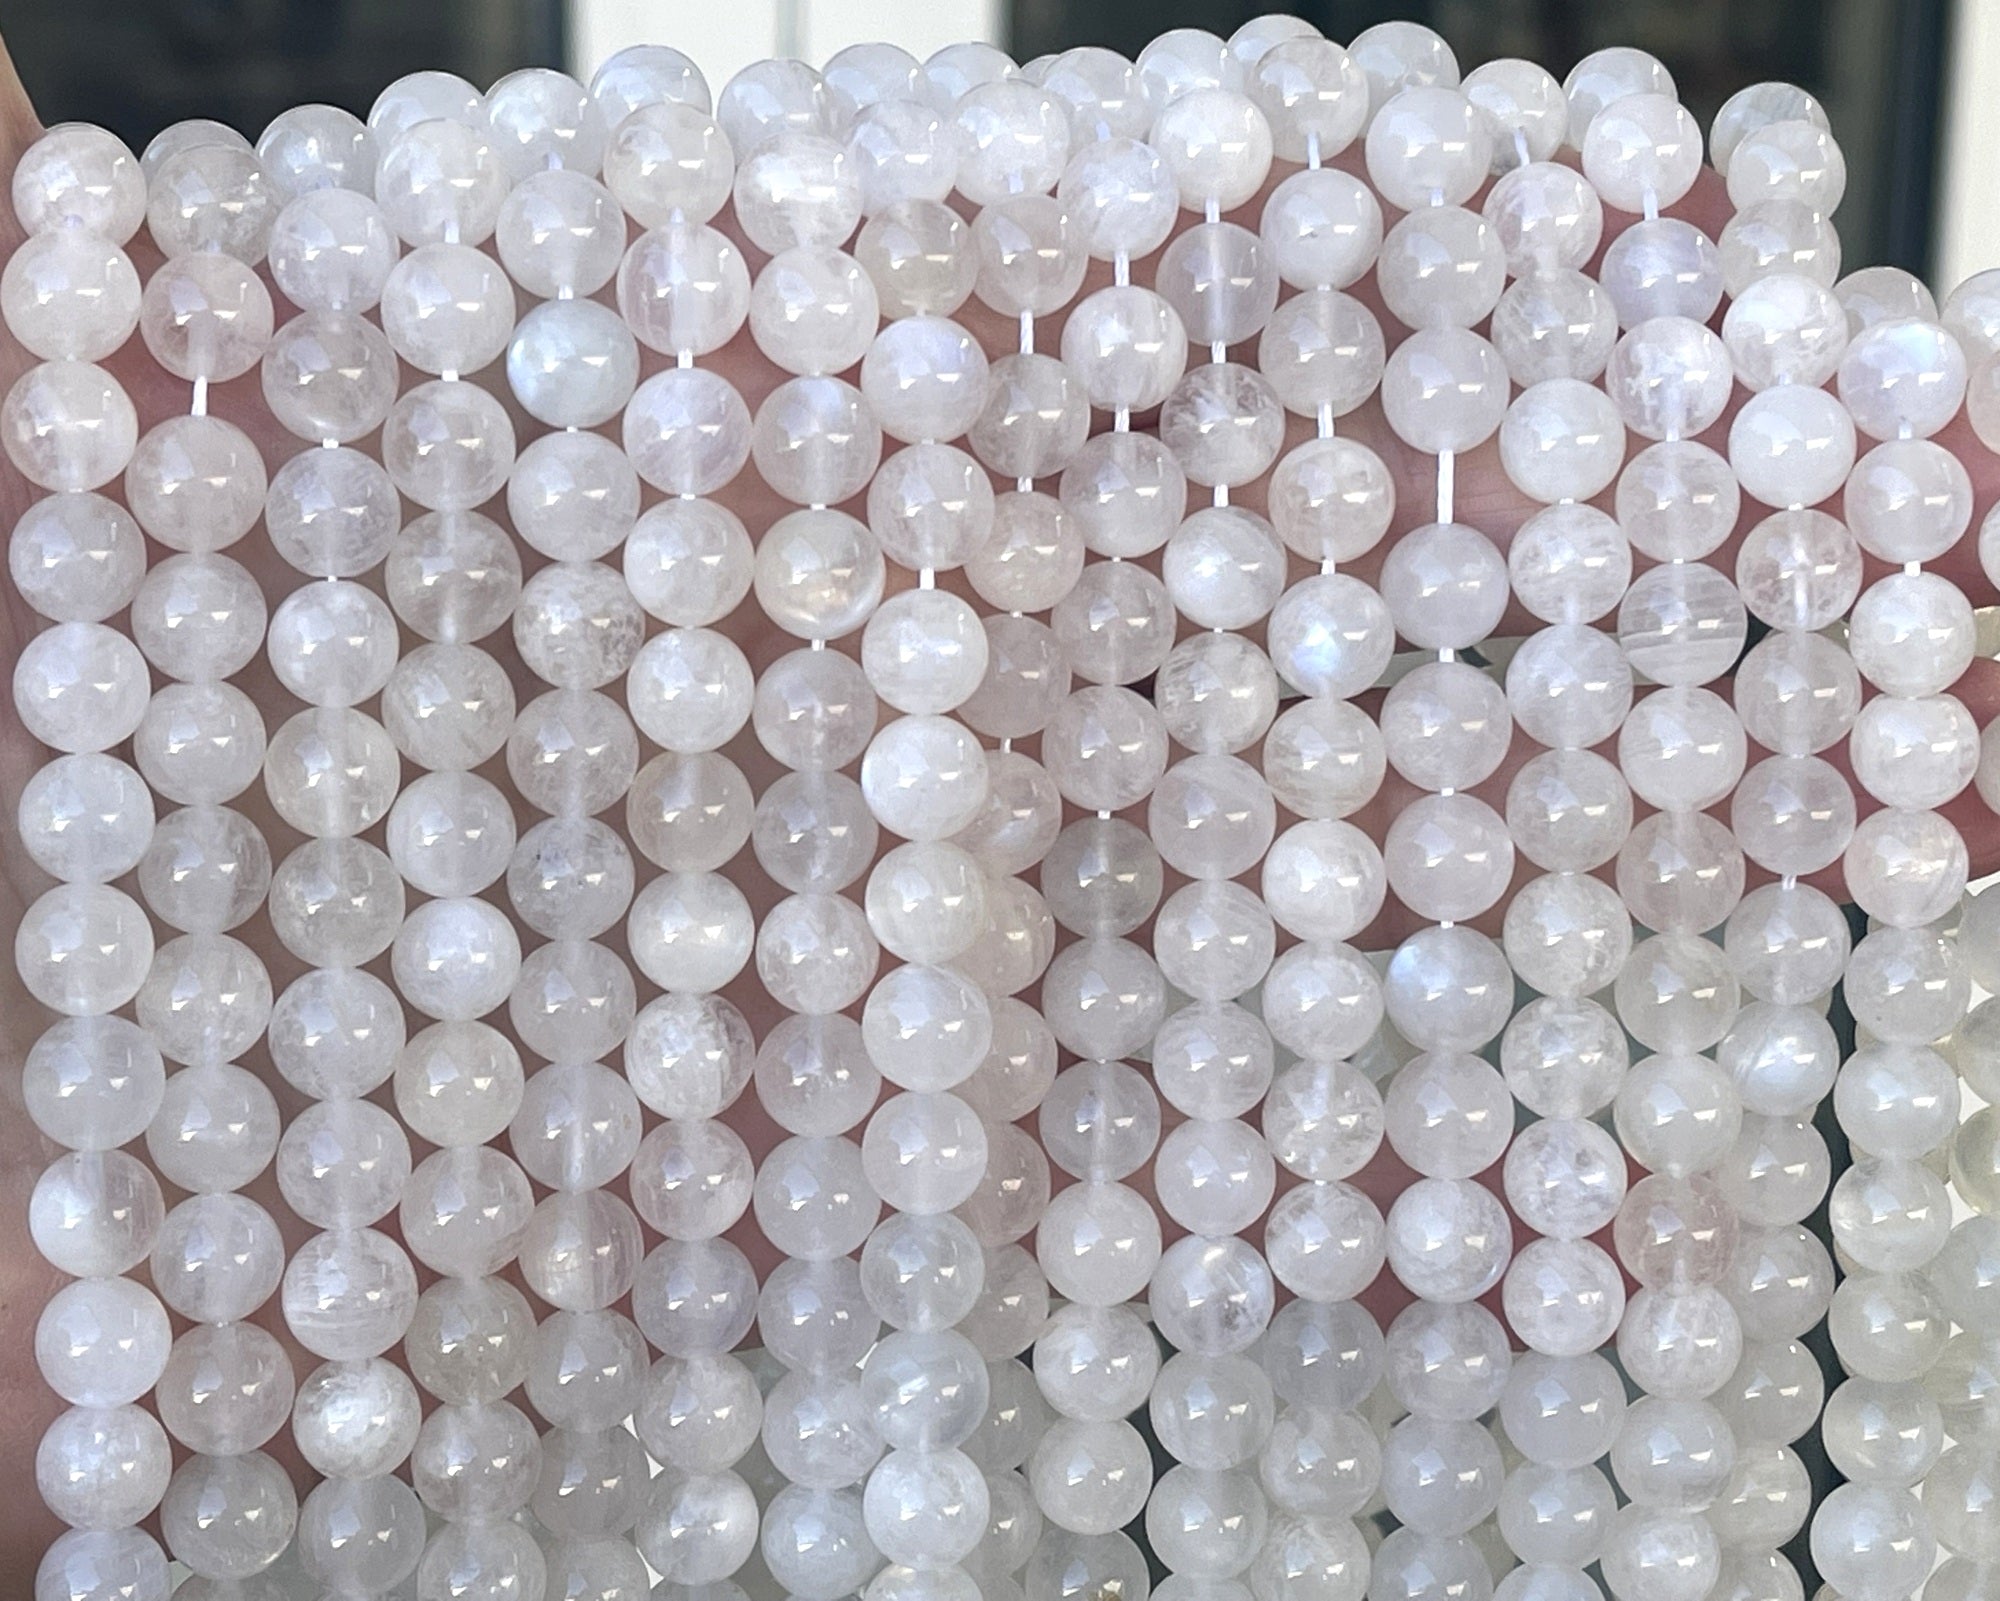 White Rainbow Moonstone 8mm round natural gemstone beads 15.5" strand